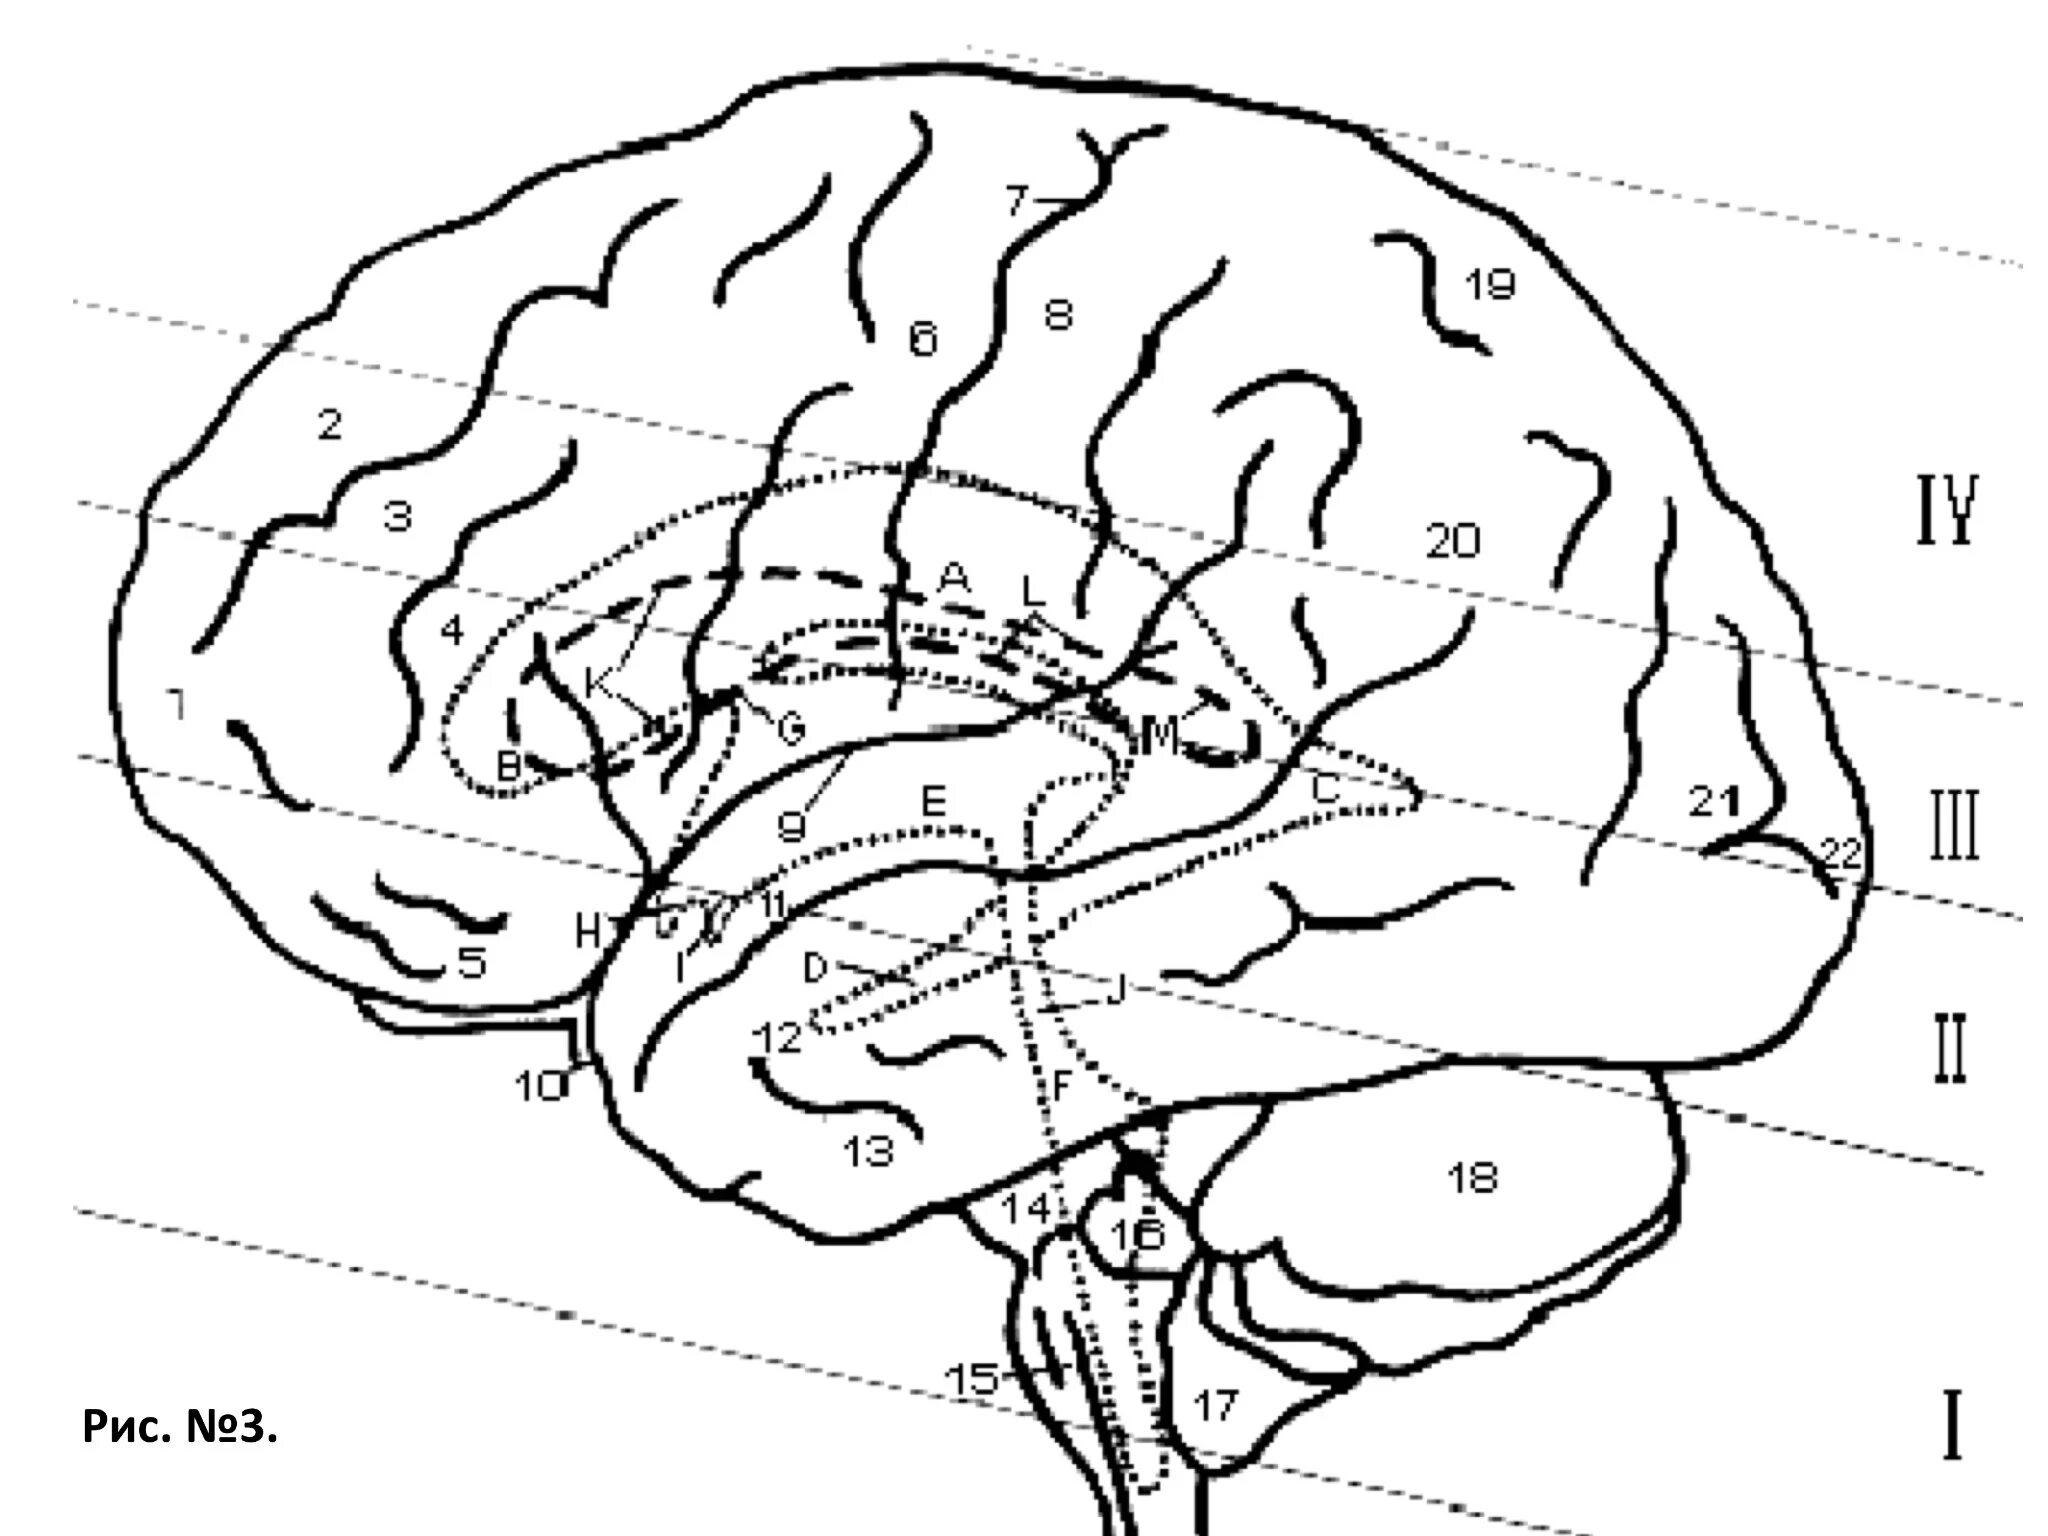 Сводчатая извилина анатомия. Проекция мозга. Латеральная поверхность головного мозга. Сагиттальная проекция мозга. Складчатая поверхность головного мозга